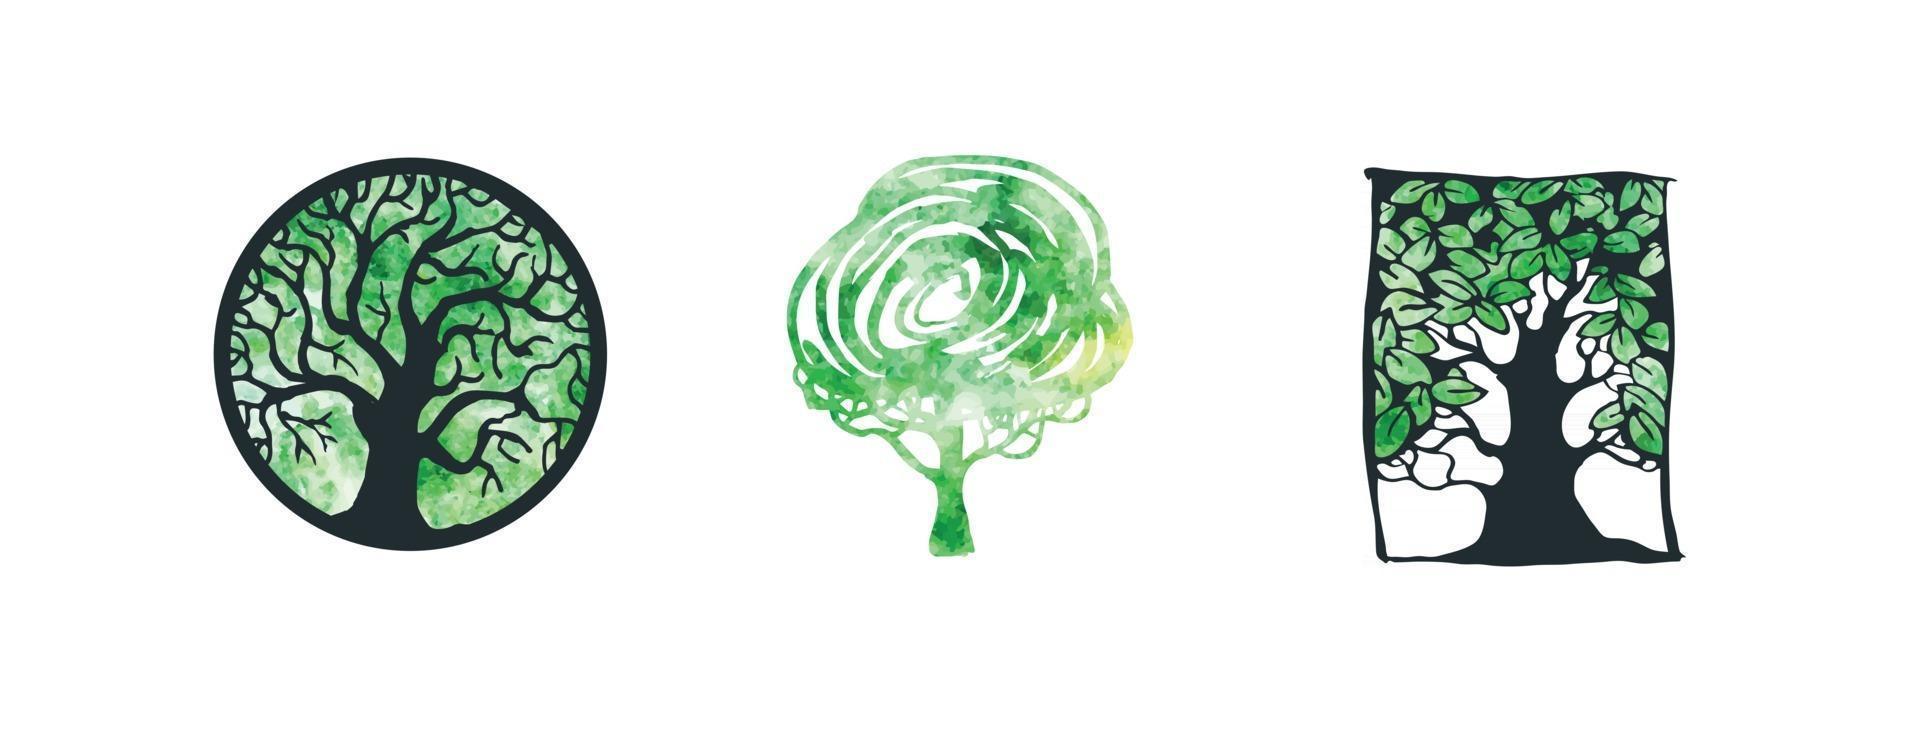 Vektor Aquarell bunte Reihe von Baum-Logo und Symbolen. Designvorlage, Abzeichen, Etiketten und Logo für Unternehmen